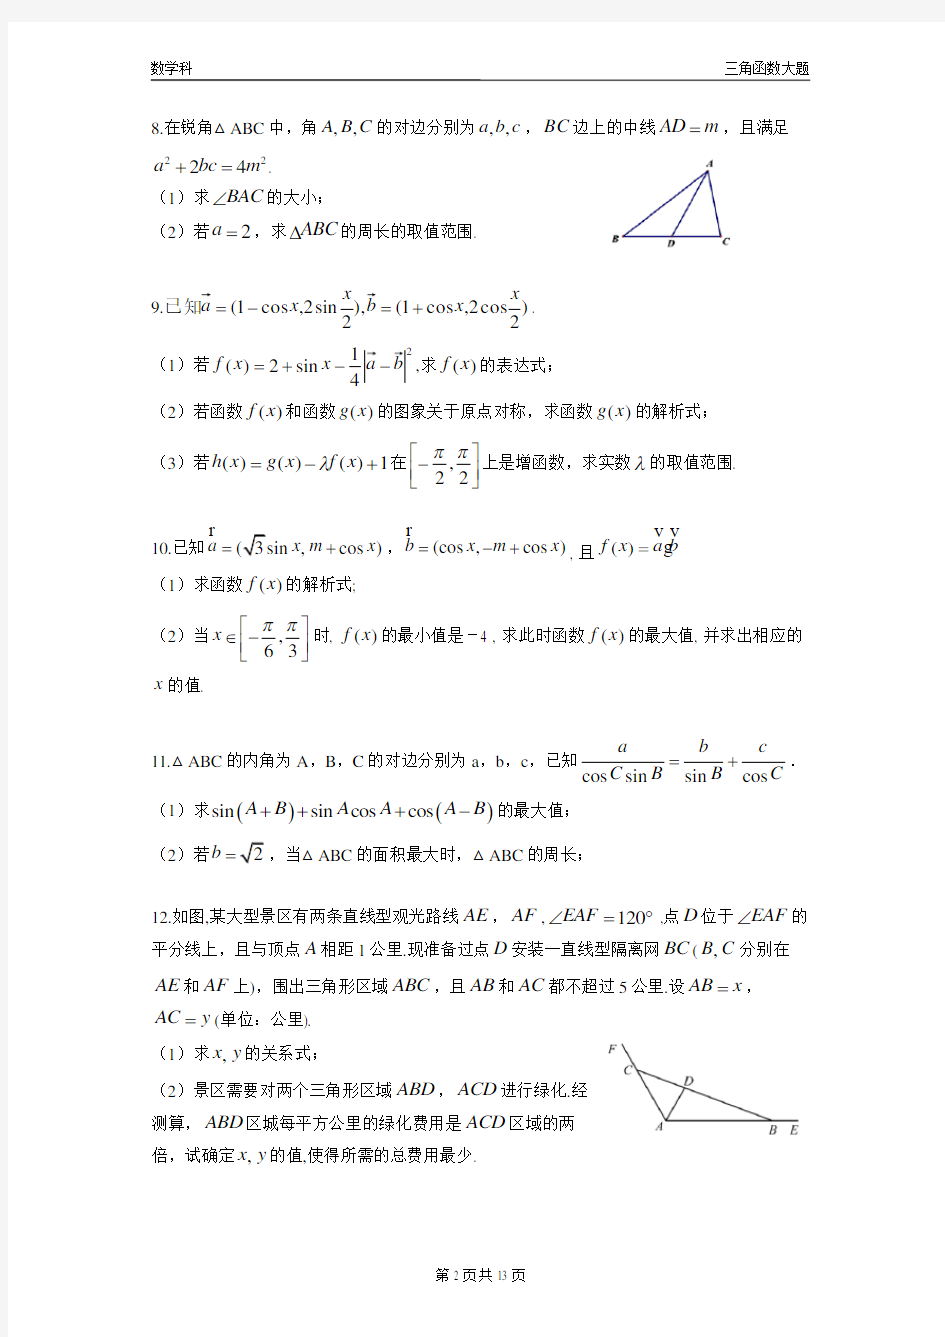 (完整)2019年高考三角函数大题专项练习集(一)